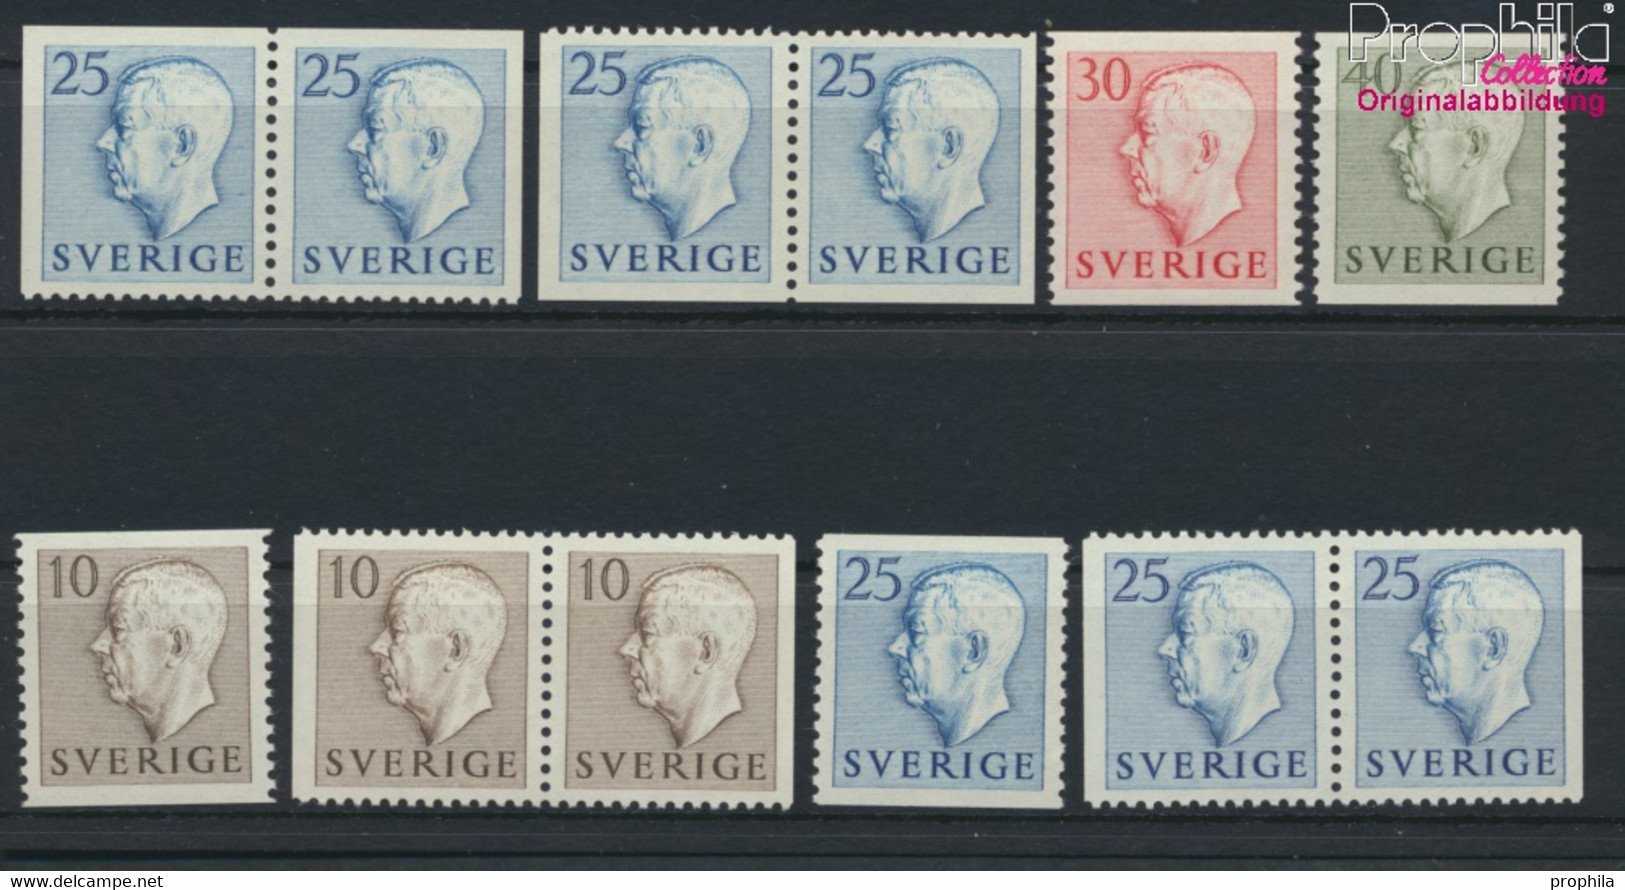 Schweden 390A,Dl,Dr,391A,Dl,Dr, Elo,Ero,Elu,Eru,392A,393A (kompl. Ausg.) Postfrisch 1954 Gustaf VI Adolf (9915816 - Nuevos